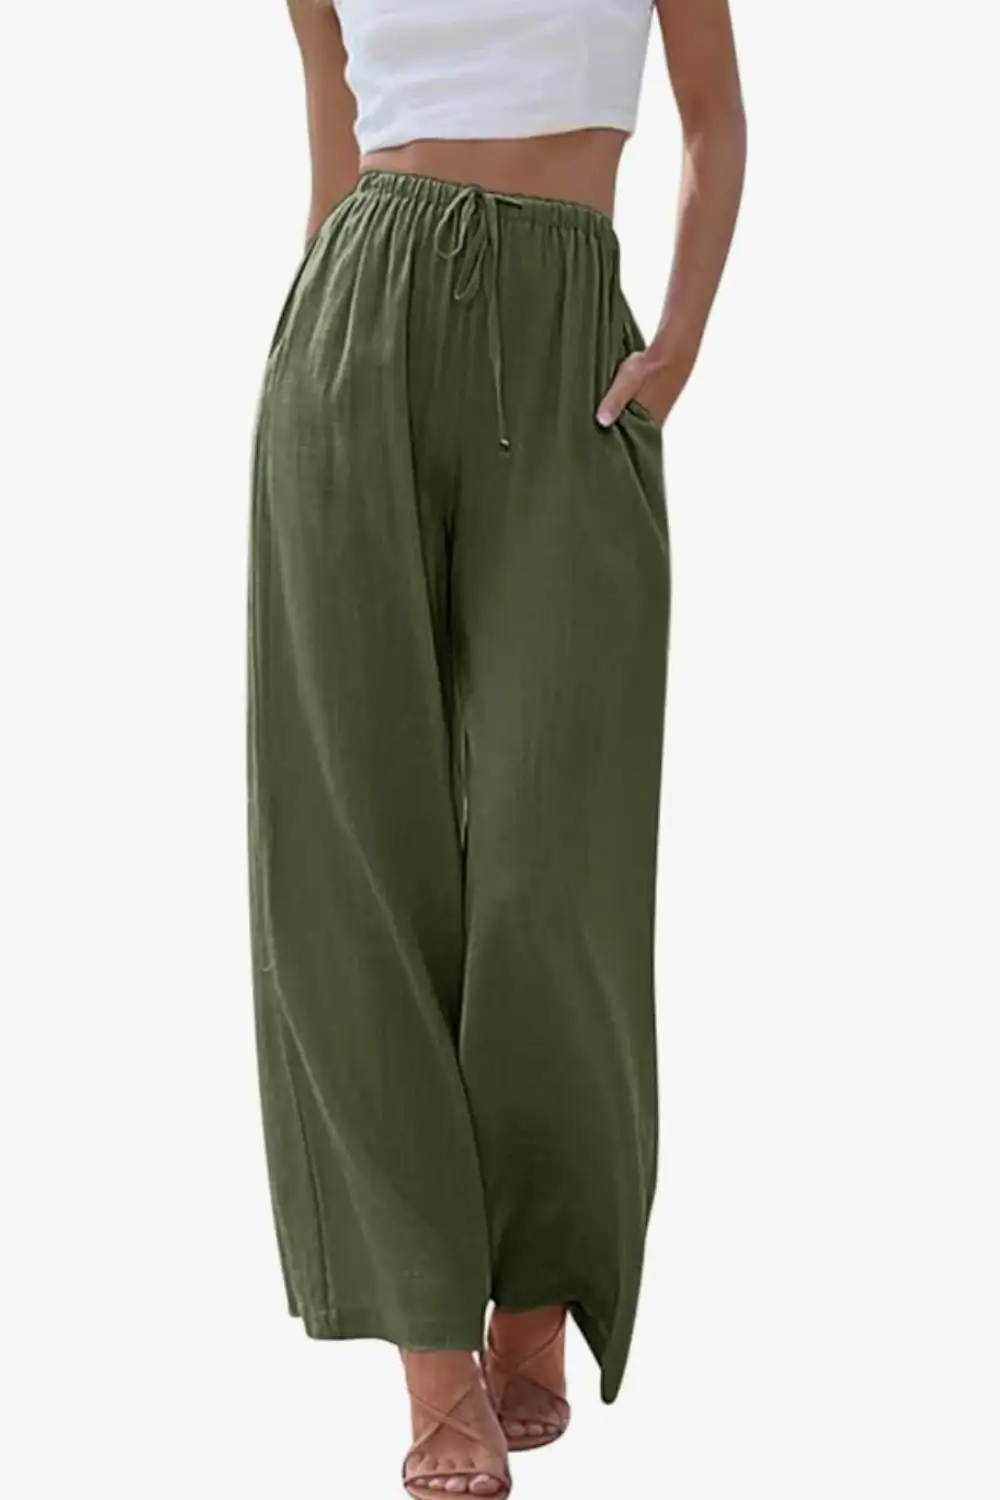 pantalones verdes 2